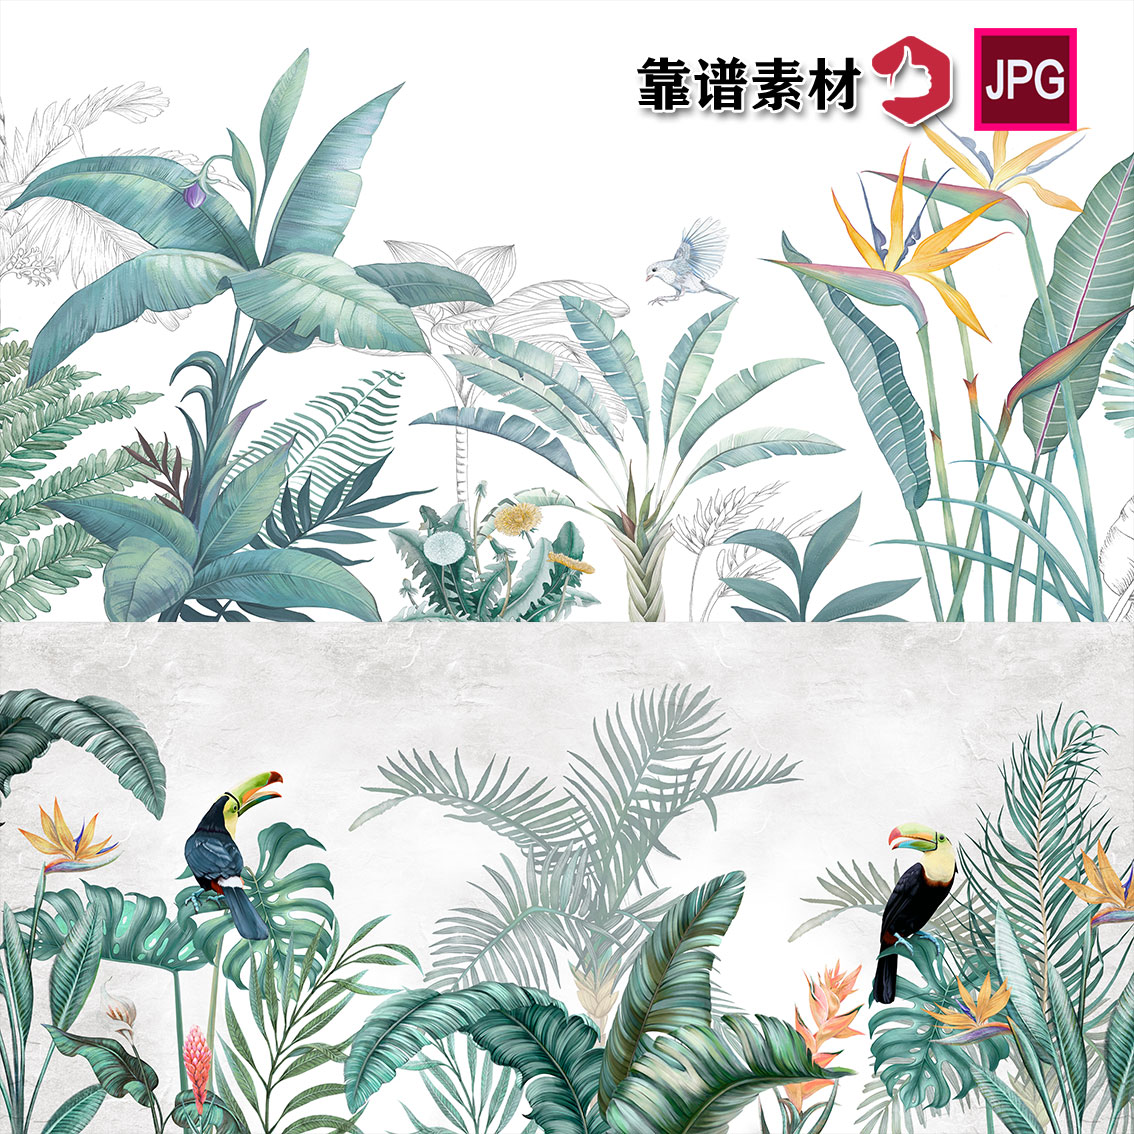 手绘水彩清新热带雨林棕榈植物叶子高清壁画背景图片设计素材